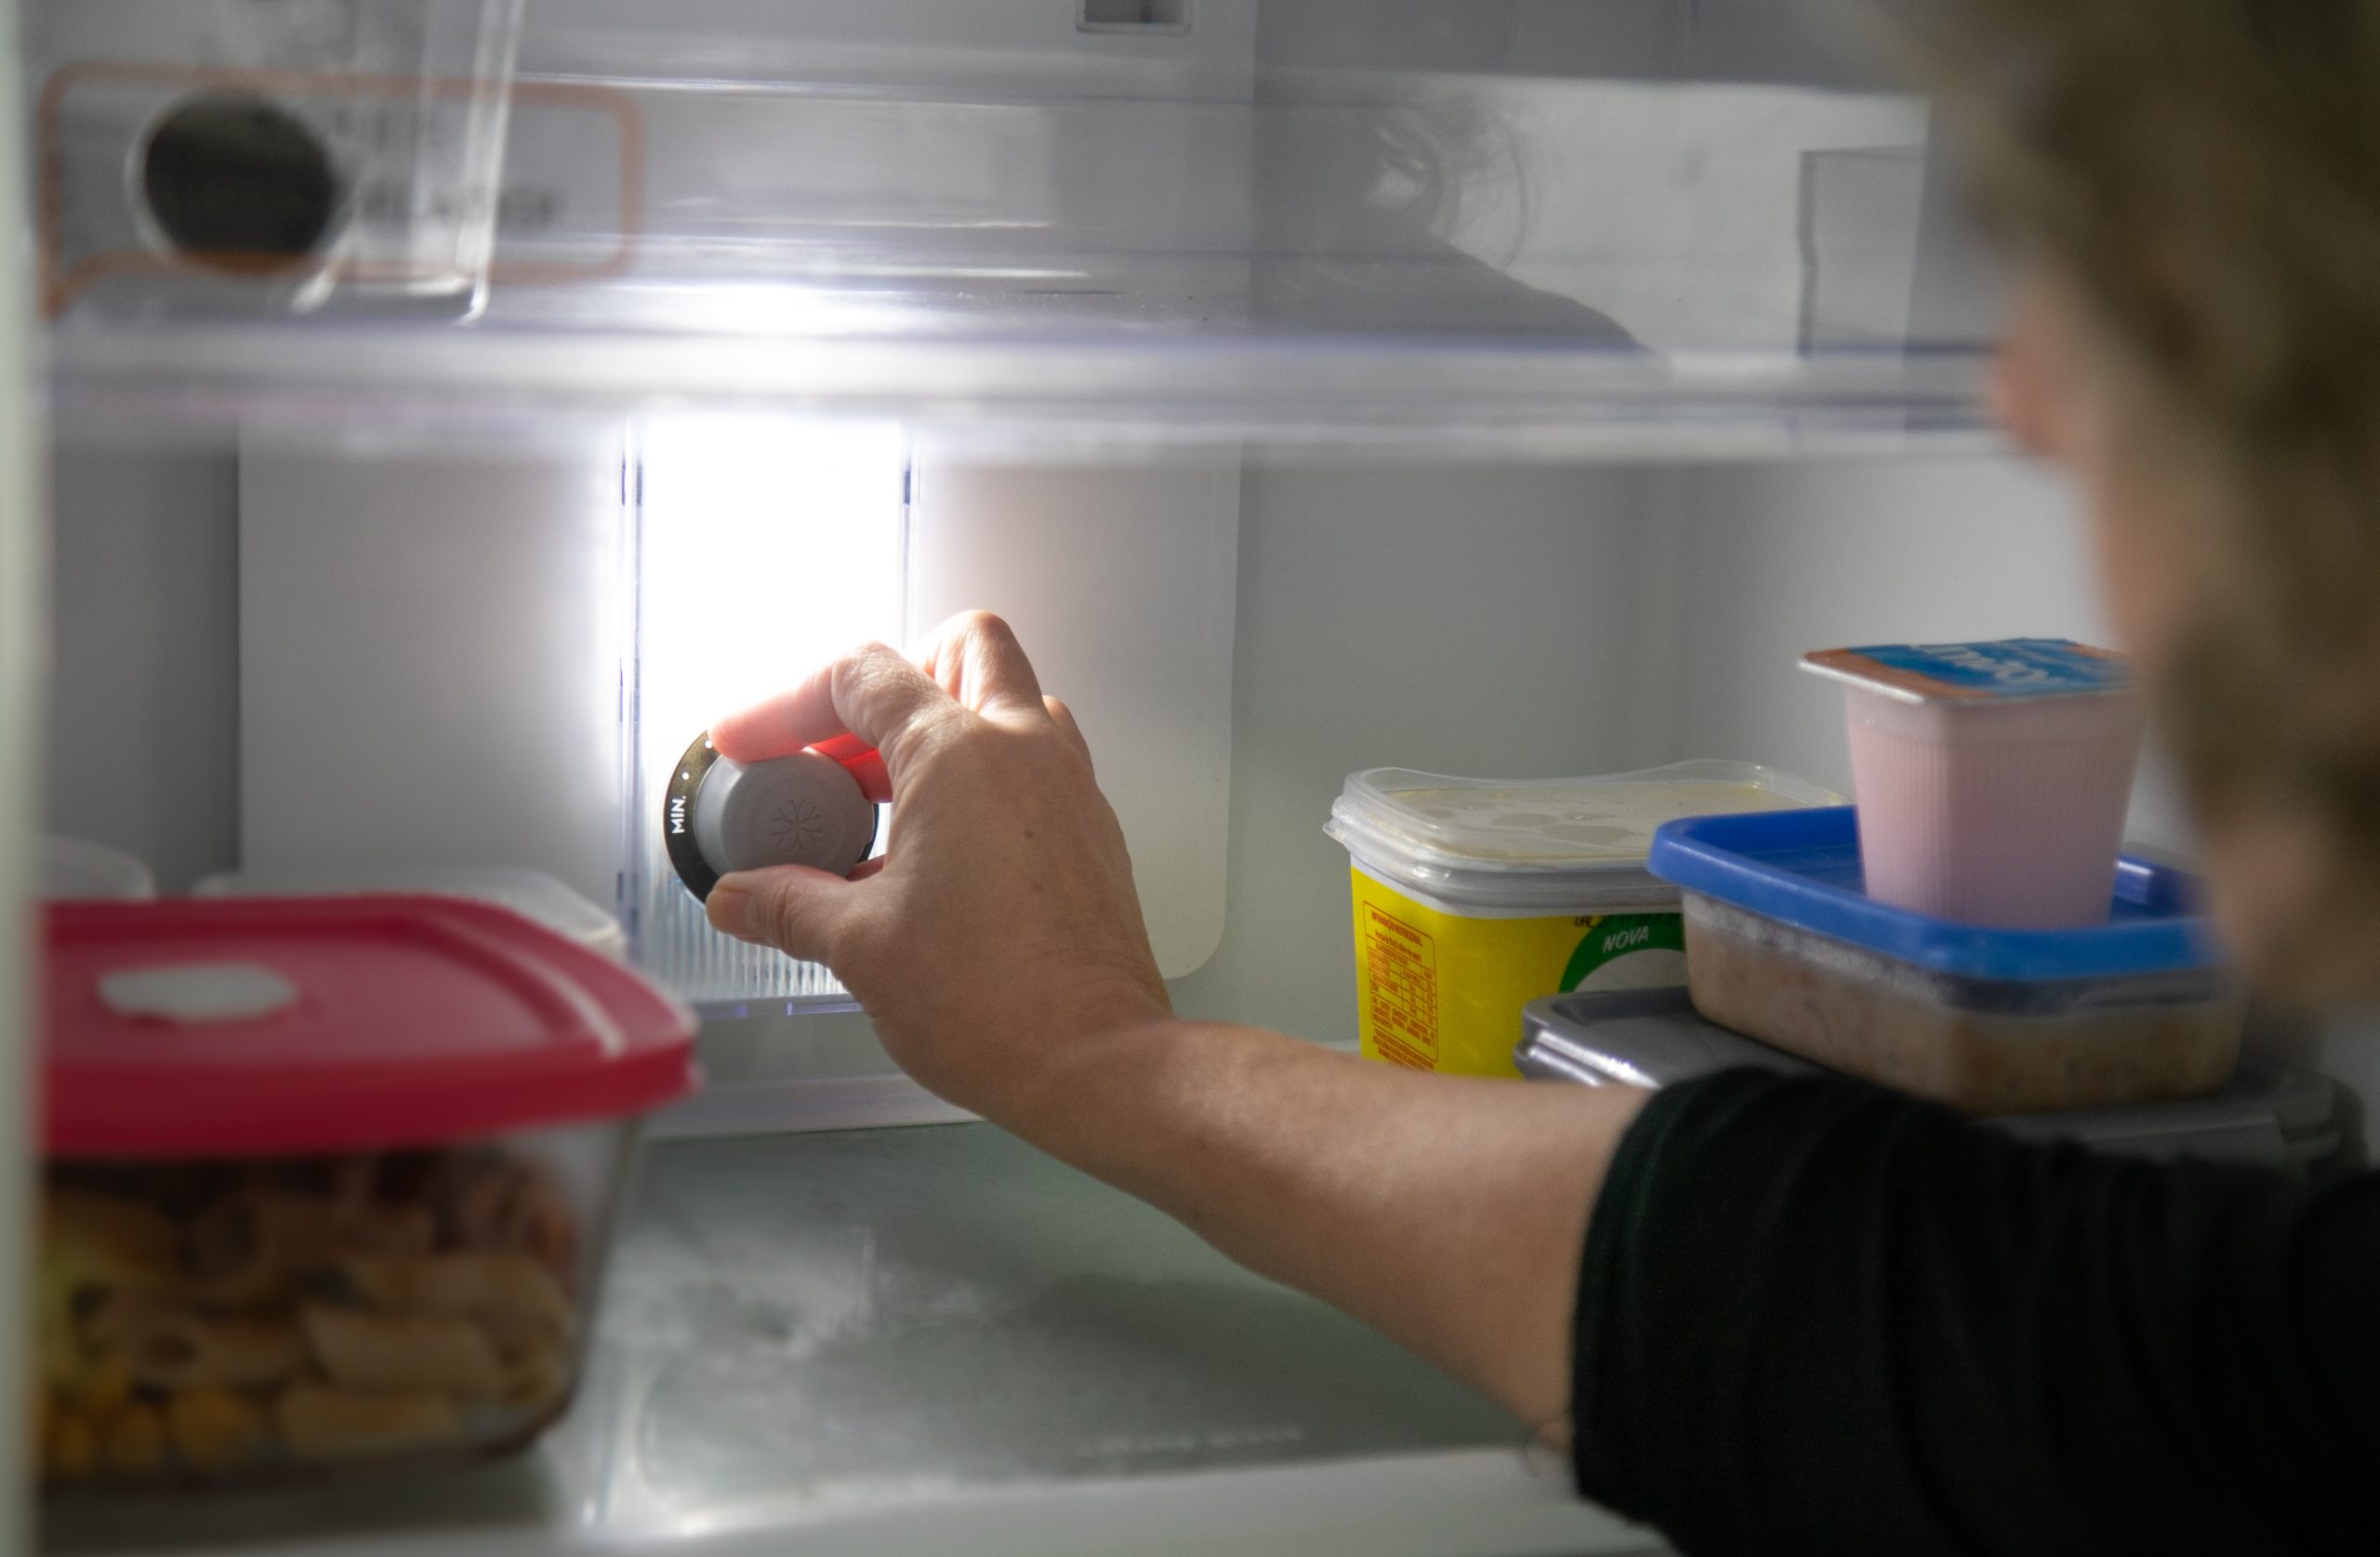 Parte interna da geladeira; mão toca o botão que regula temperatura